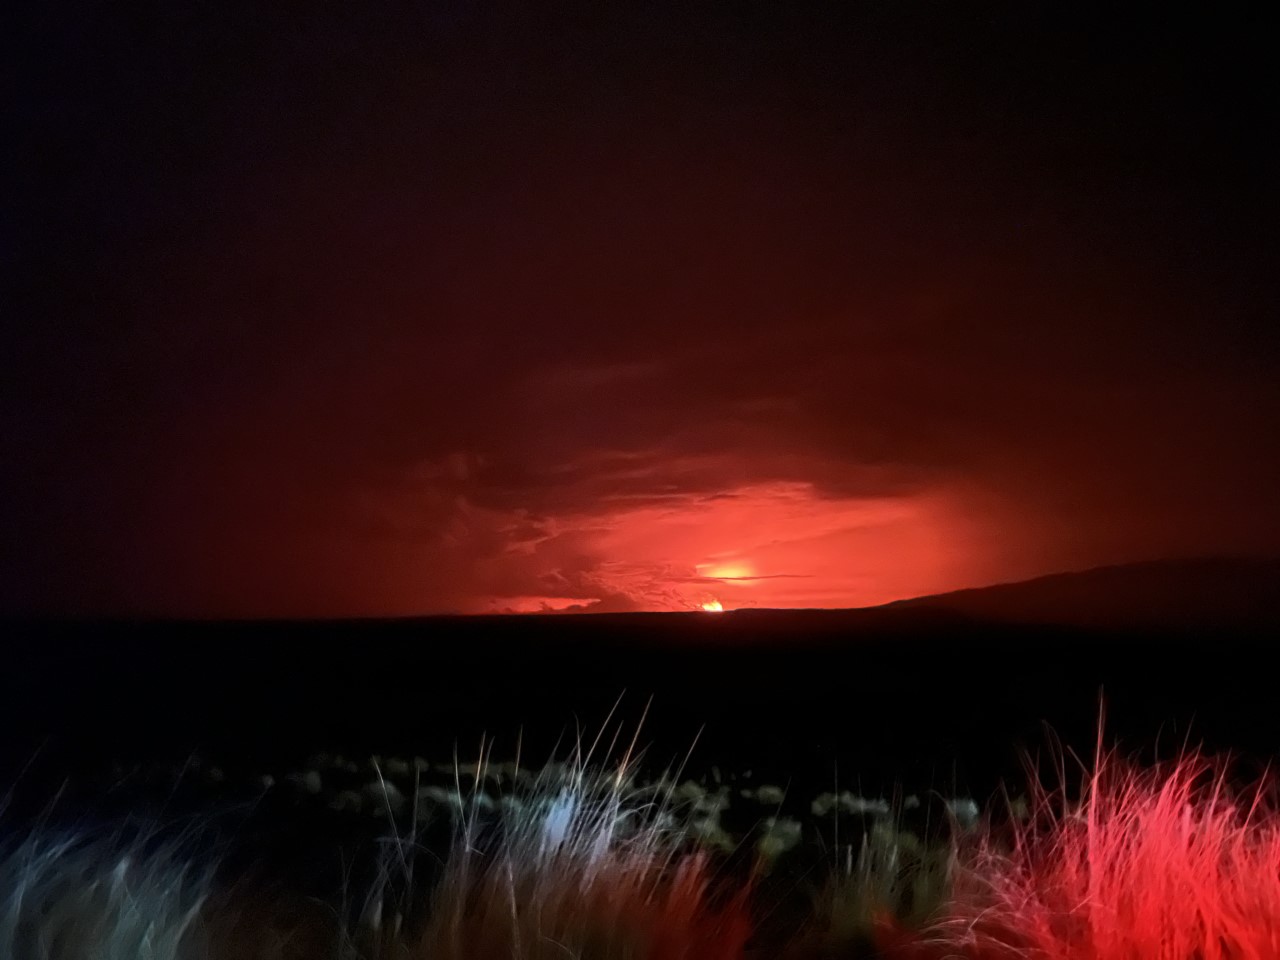 El Mauna Loa de Hawái, el volcán activo más grande del mundo, entró en erupción por primera vez en casi 40 años (Photo by Handout/US Geological Survey/AFP) / RESTRINGIDO A USO EDITORIAL - CRÉDITO OBLIGATORIO "AFP PHOTO/US Geological Survey" - SIN MARKETING - SIN CAMPAÑAS PUBLICITARIAS - DISTRIBUIDO COMO SERVICIO A CLIENTES